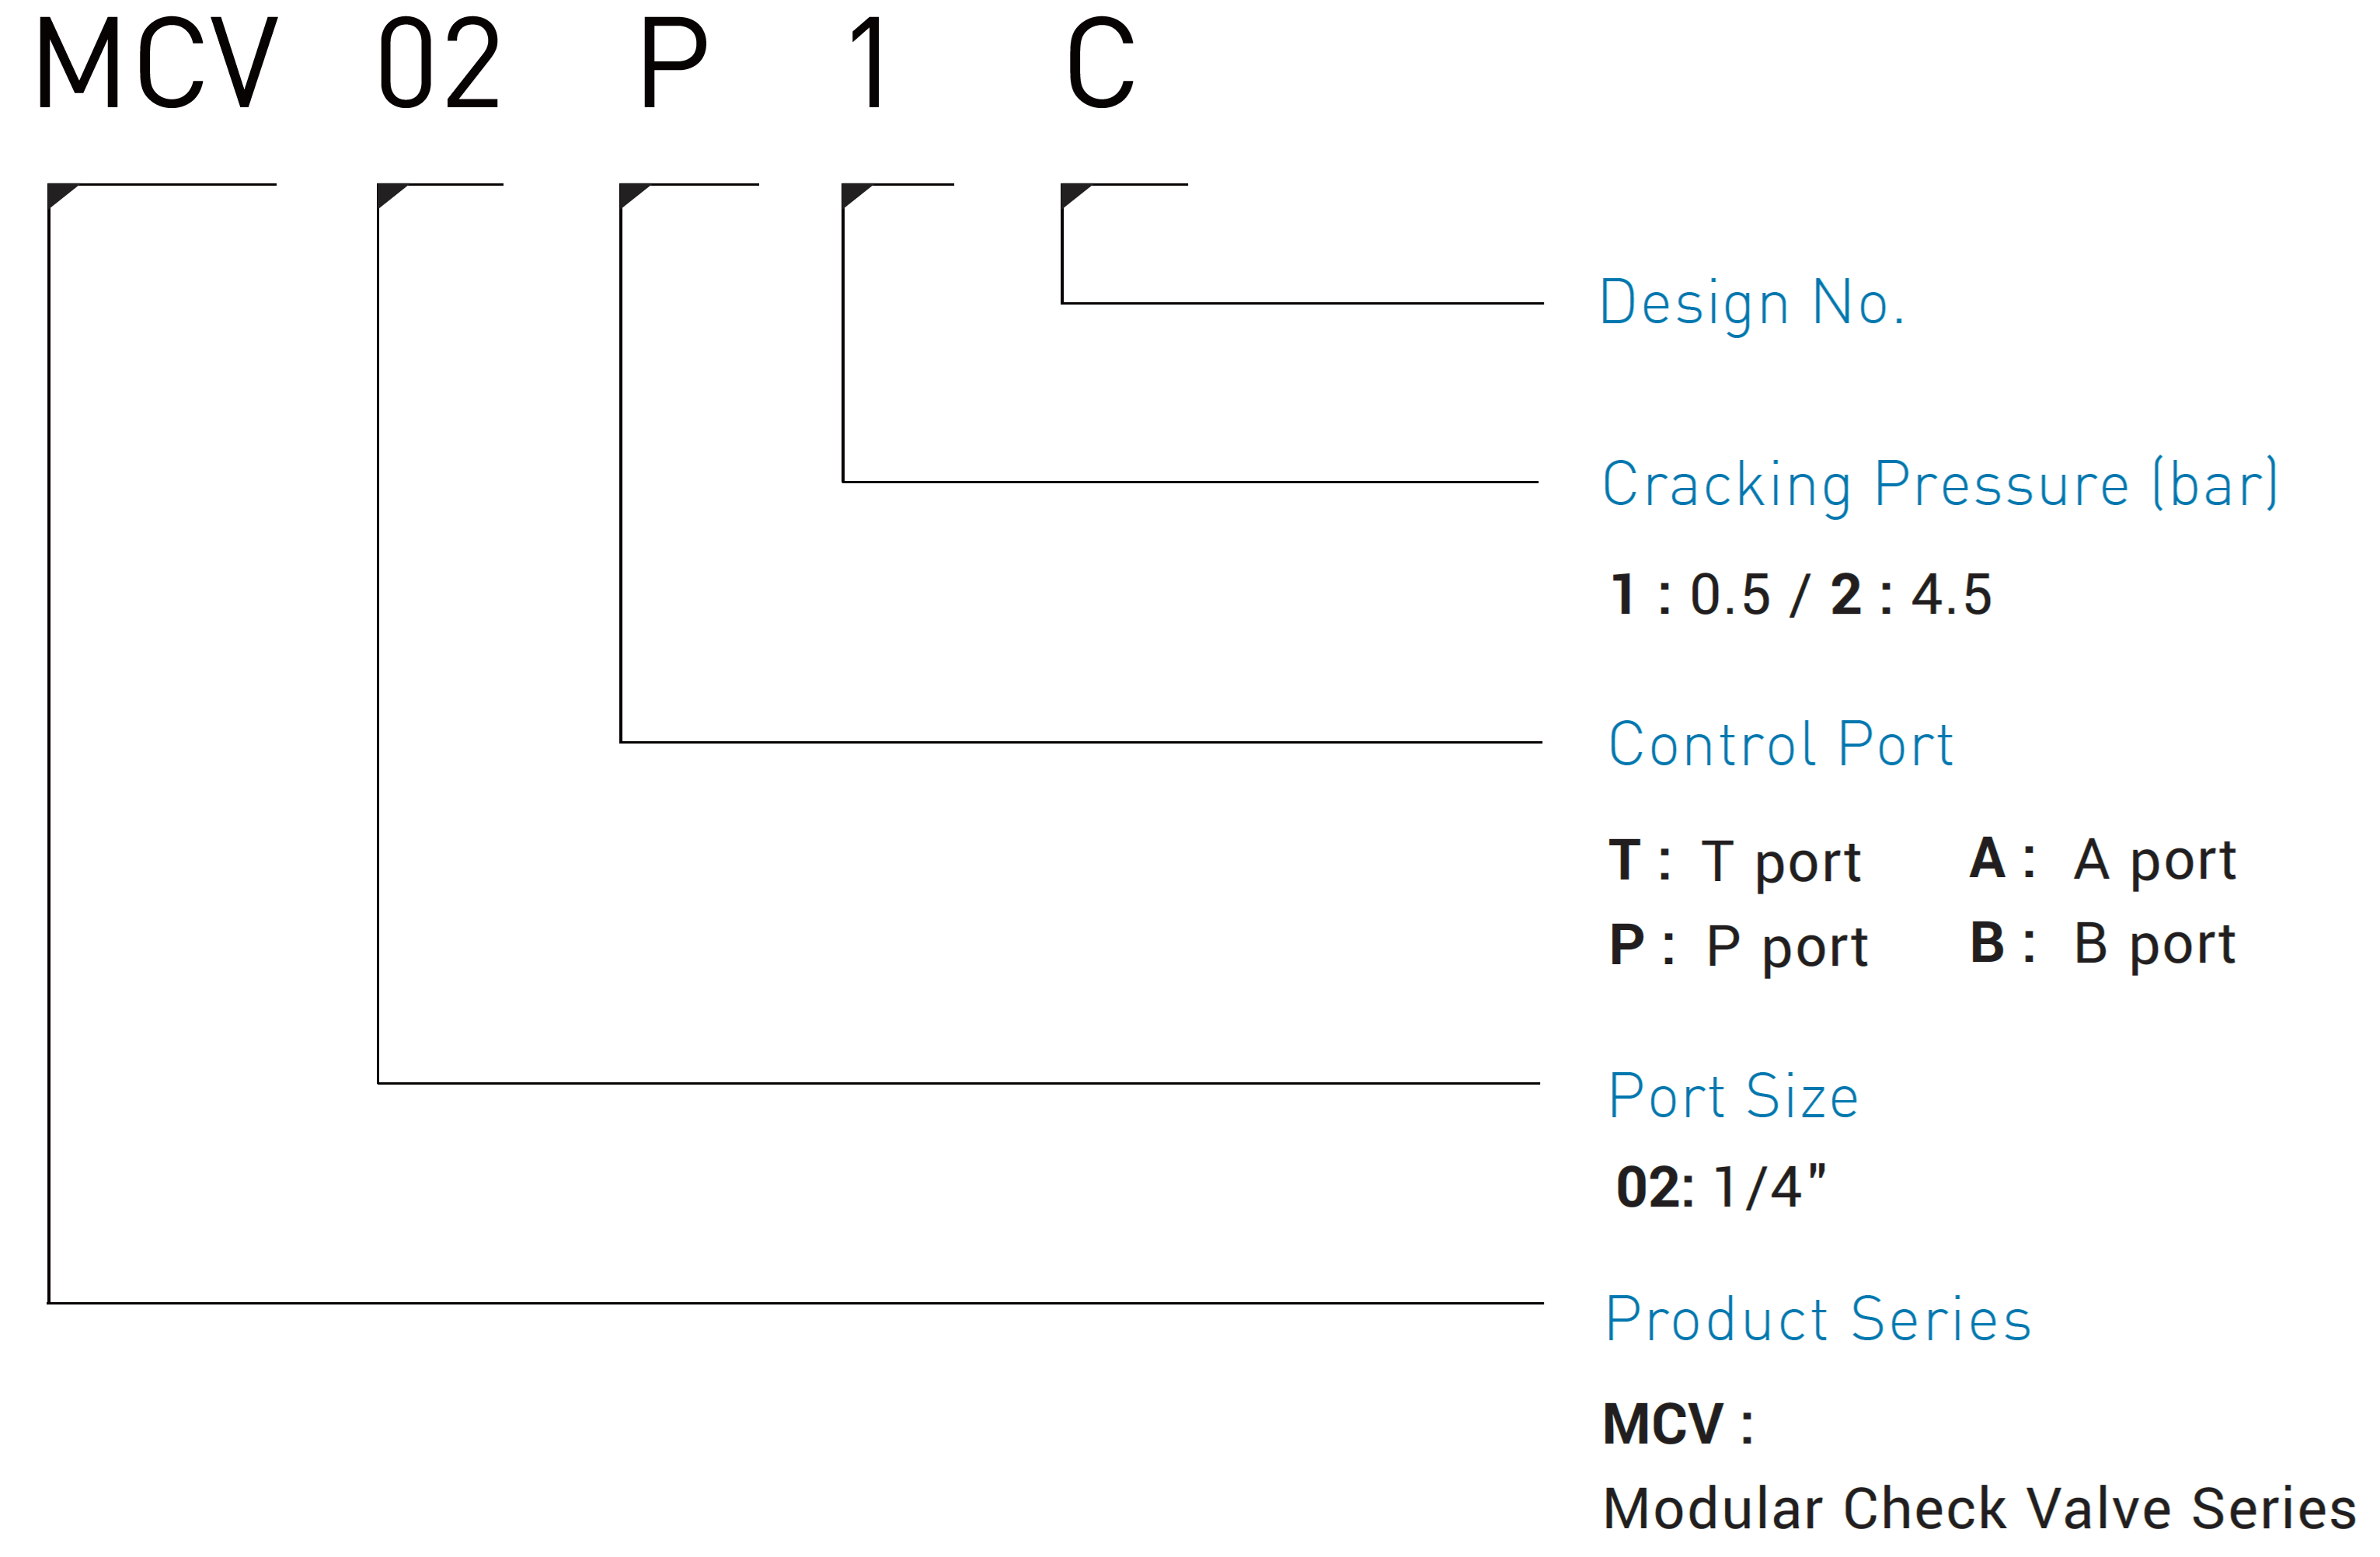 CML Модульный клапан обратного потока MCV Код модели